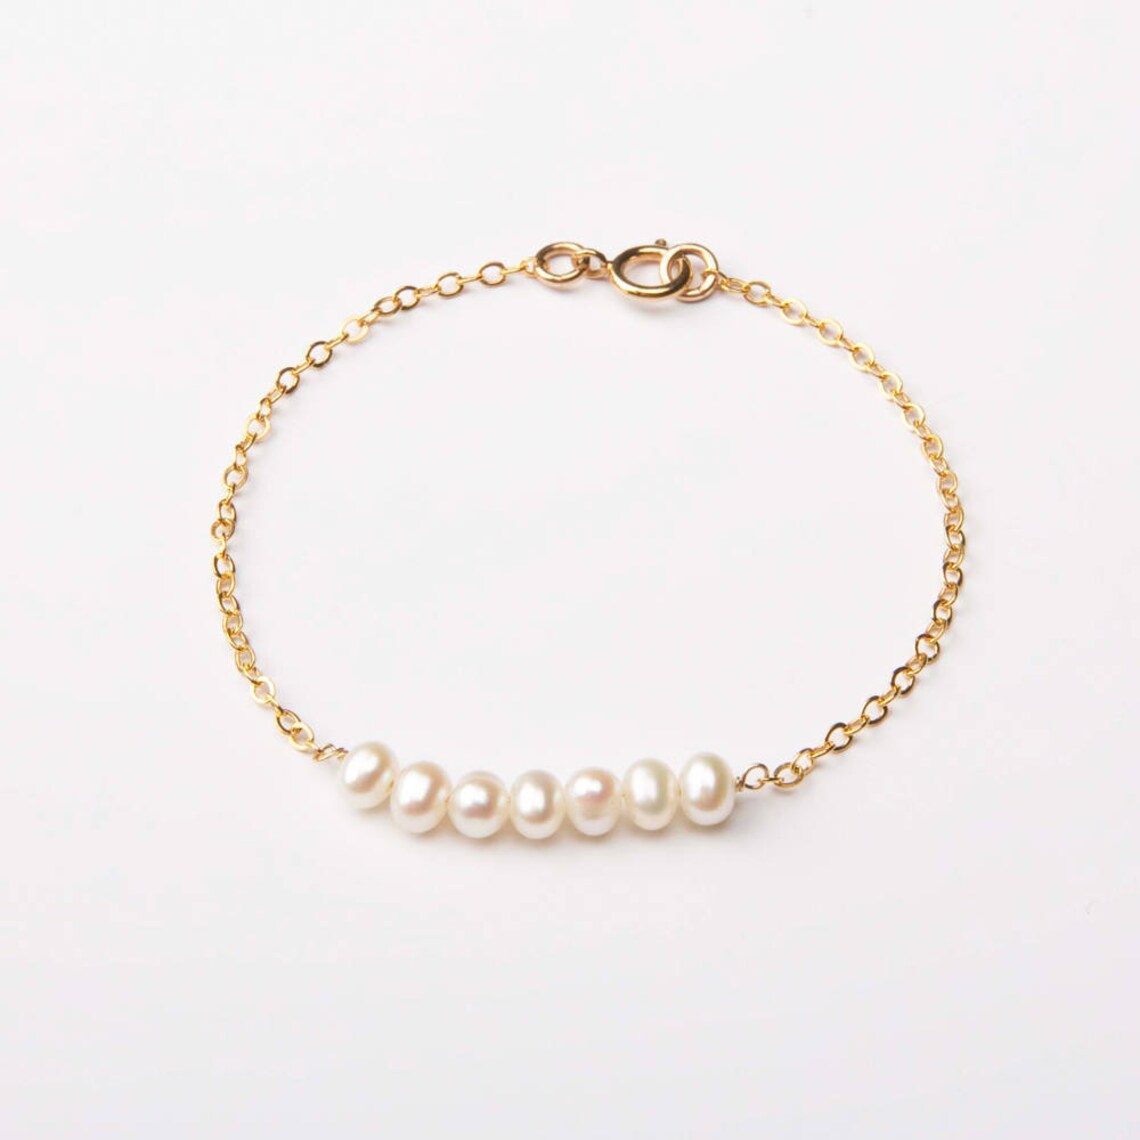 Custom Gold Barsatellite Chainfreshwater Pearl Bracelet Set | Etsy